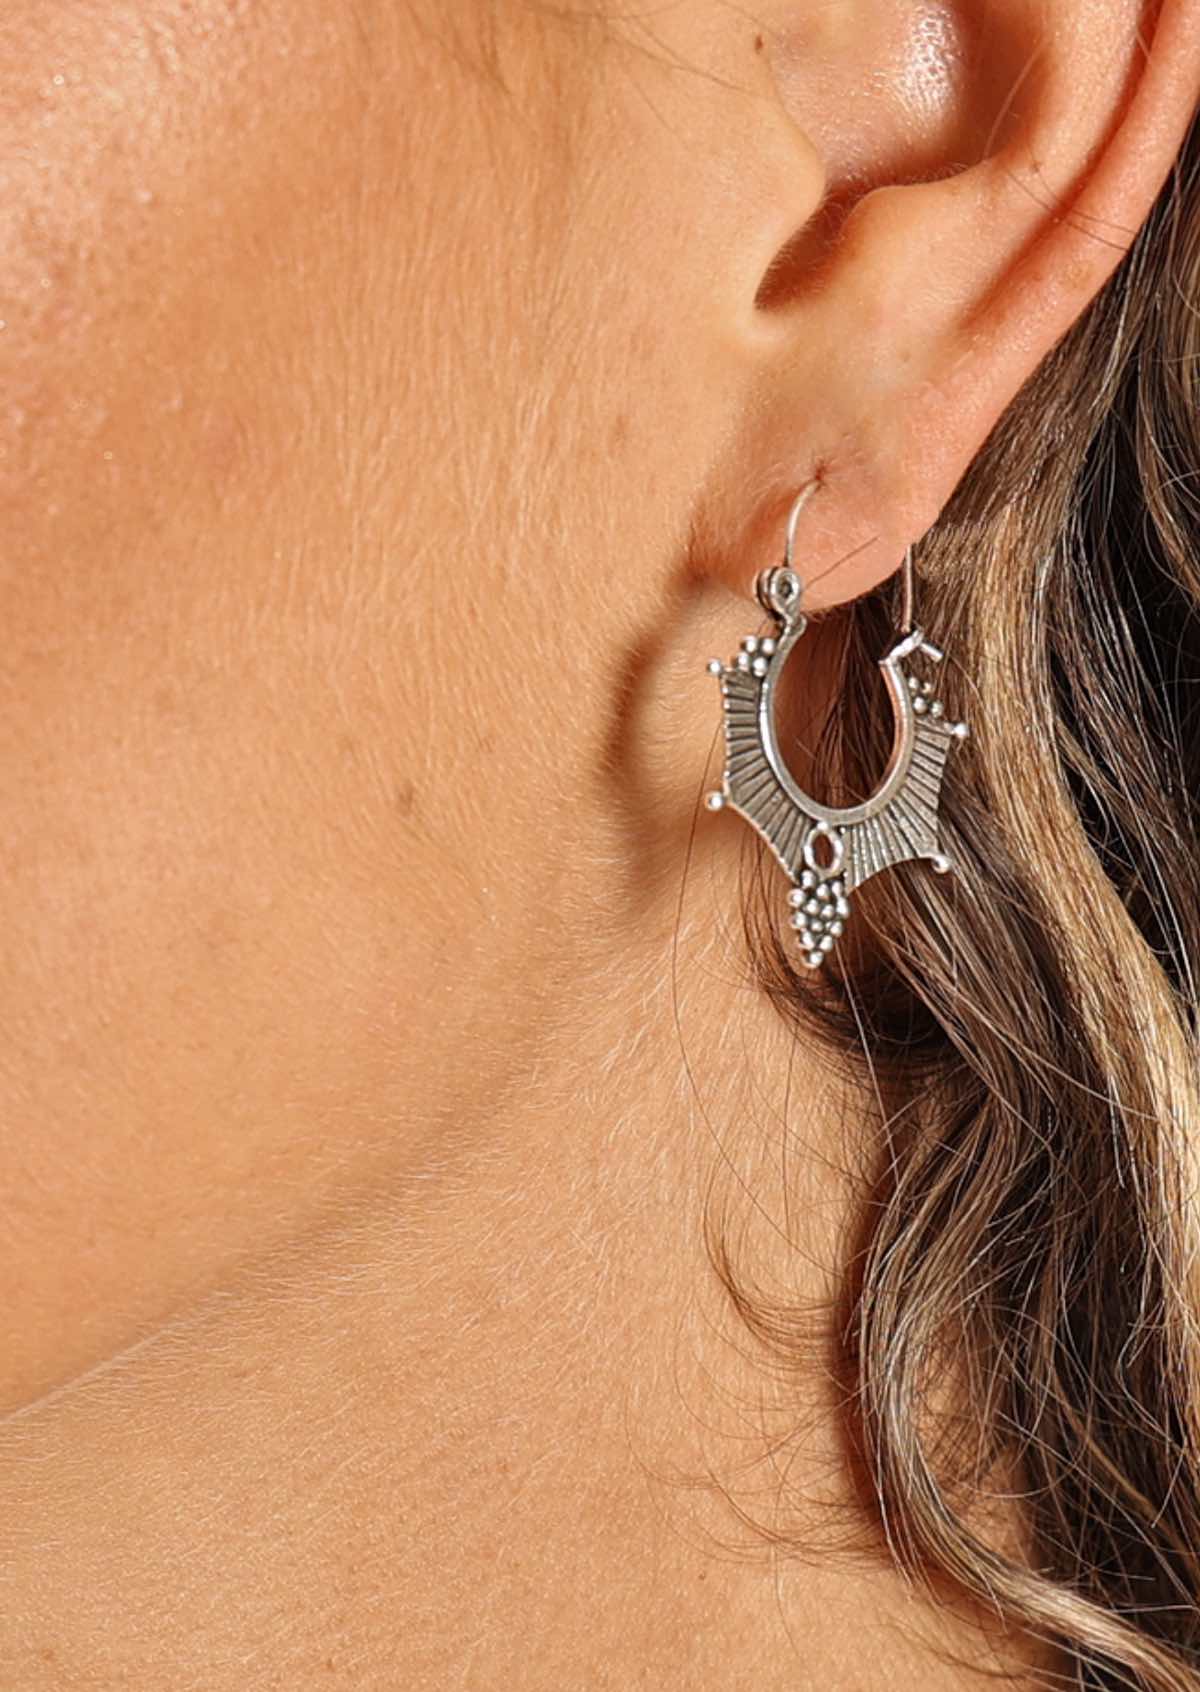 woman's ear wearing large tribal style silver hoop earrings